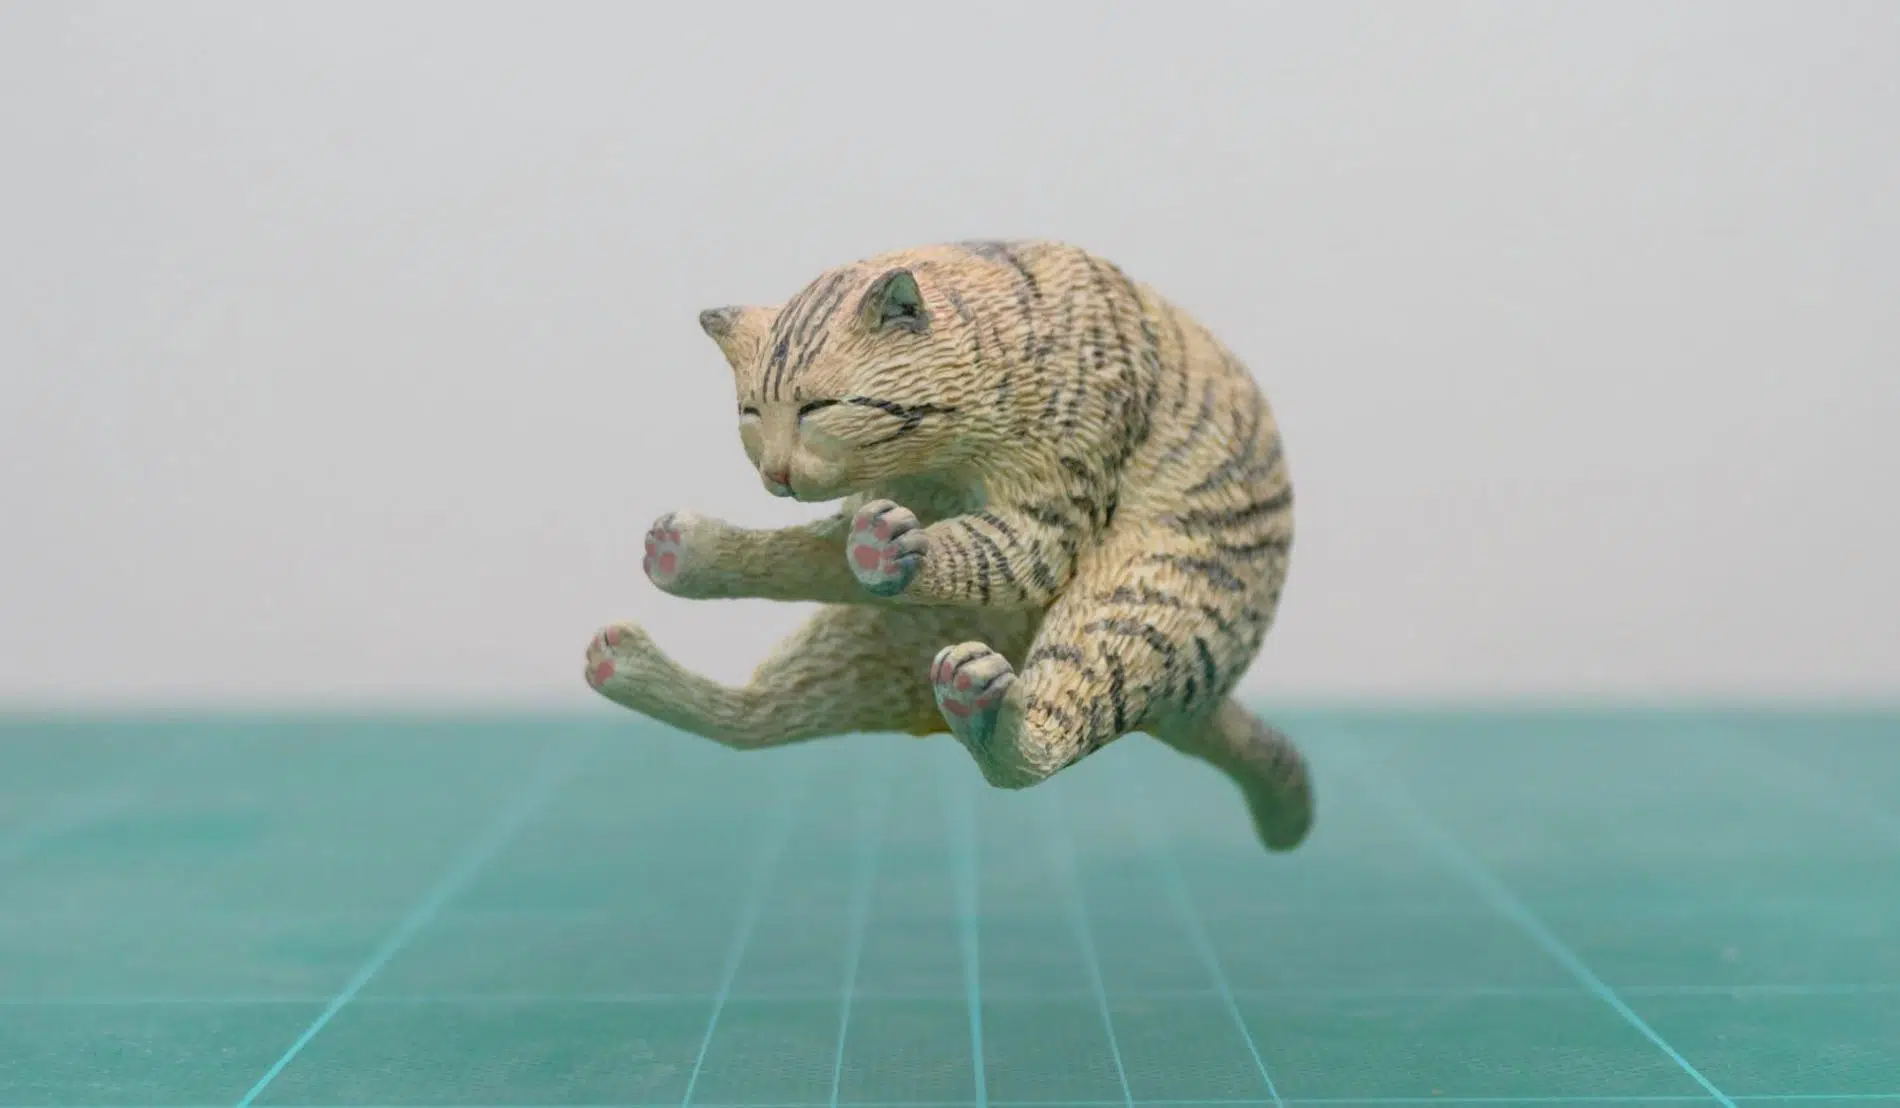 meetissai esculruras de memes de animales gato salta ninja